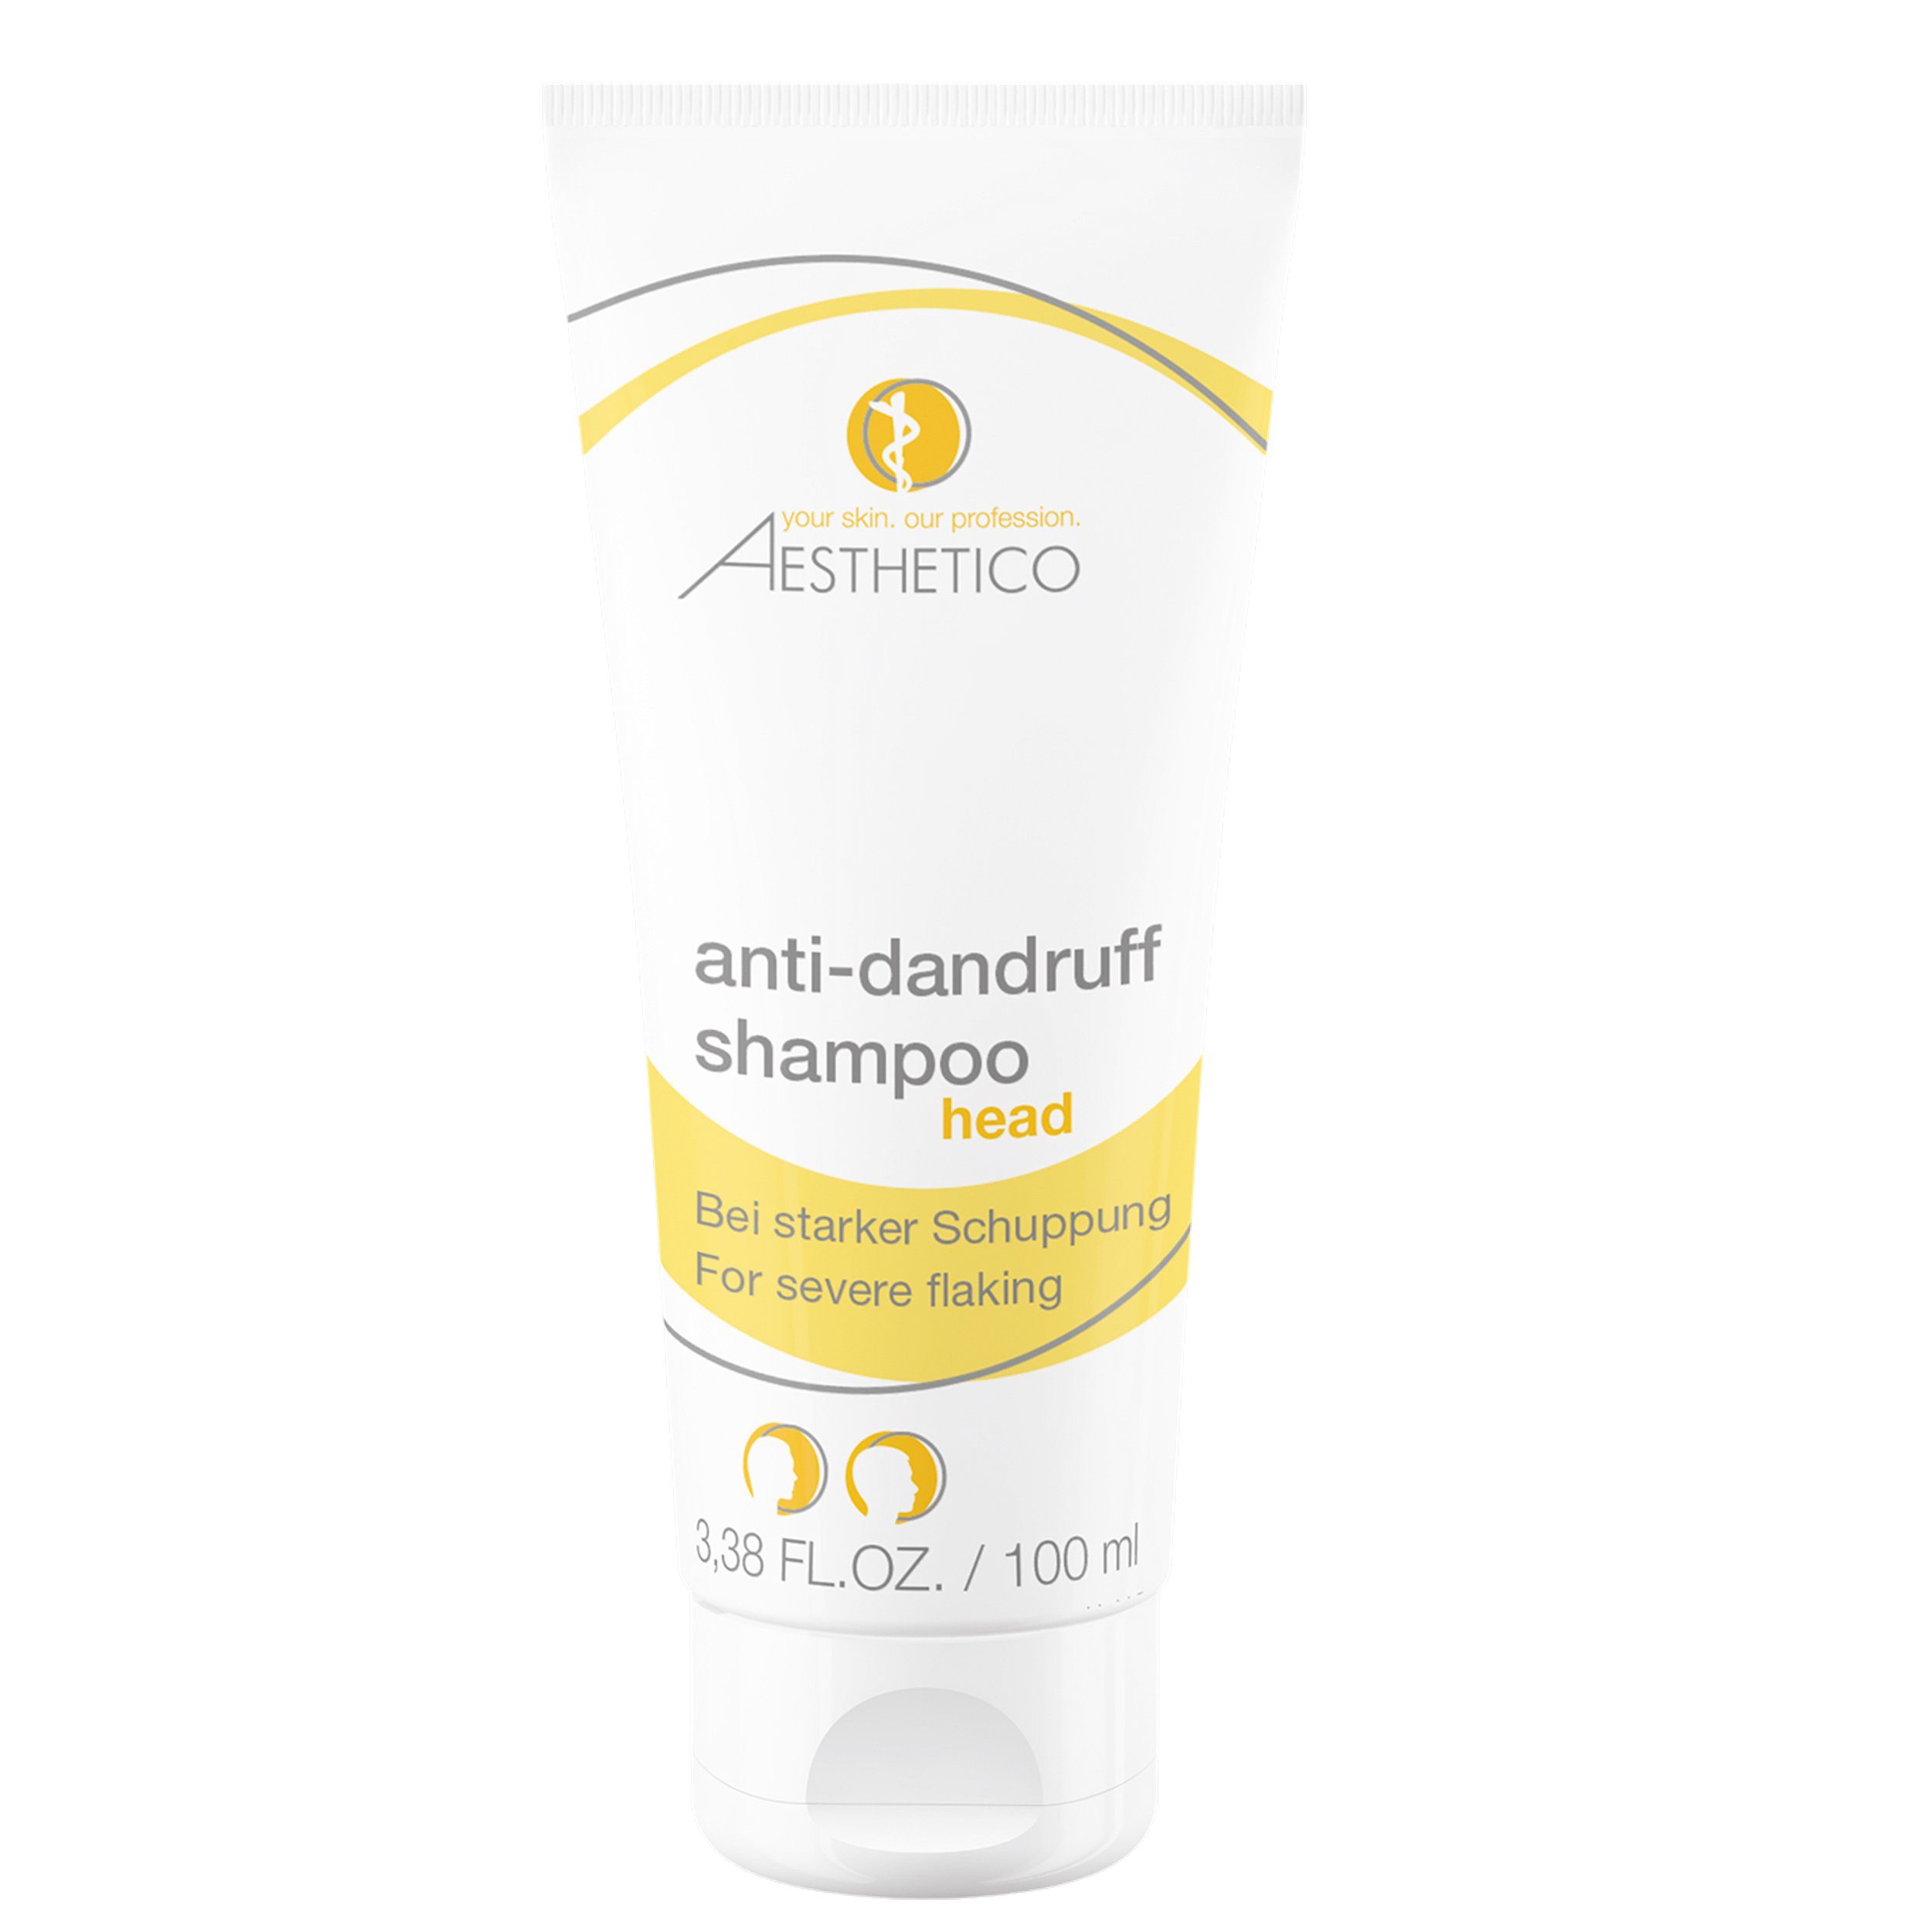 Aesthetico Kopfhaut-Pflegeshampoo anti-dandruff shampoo, 100 ml – Haarpflege